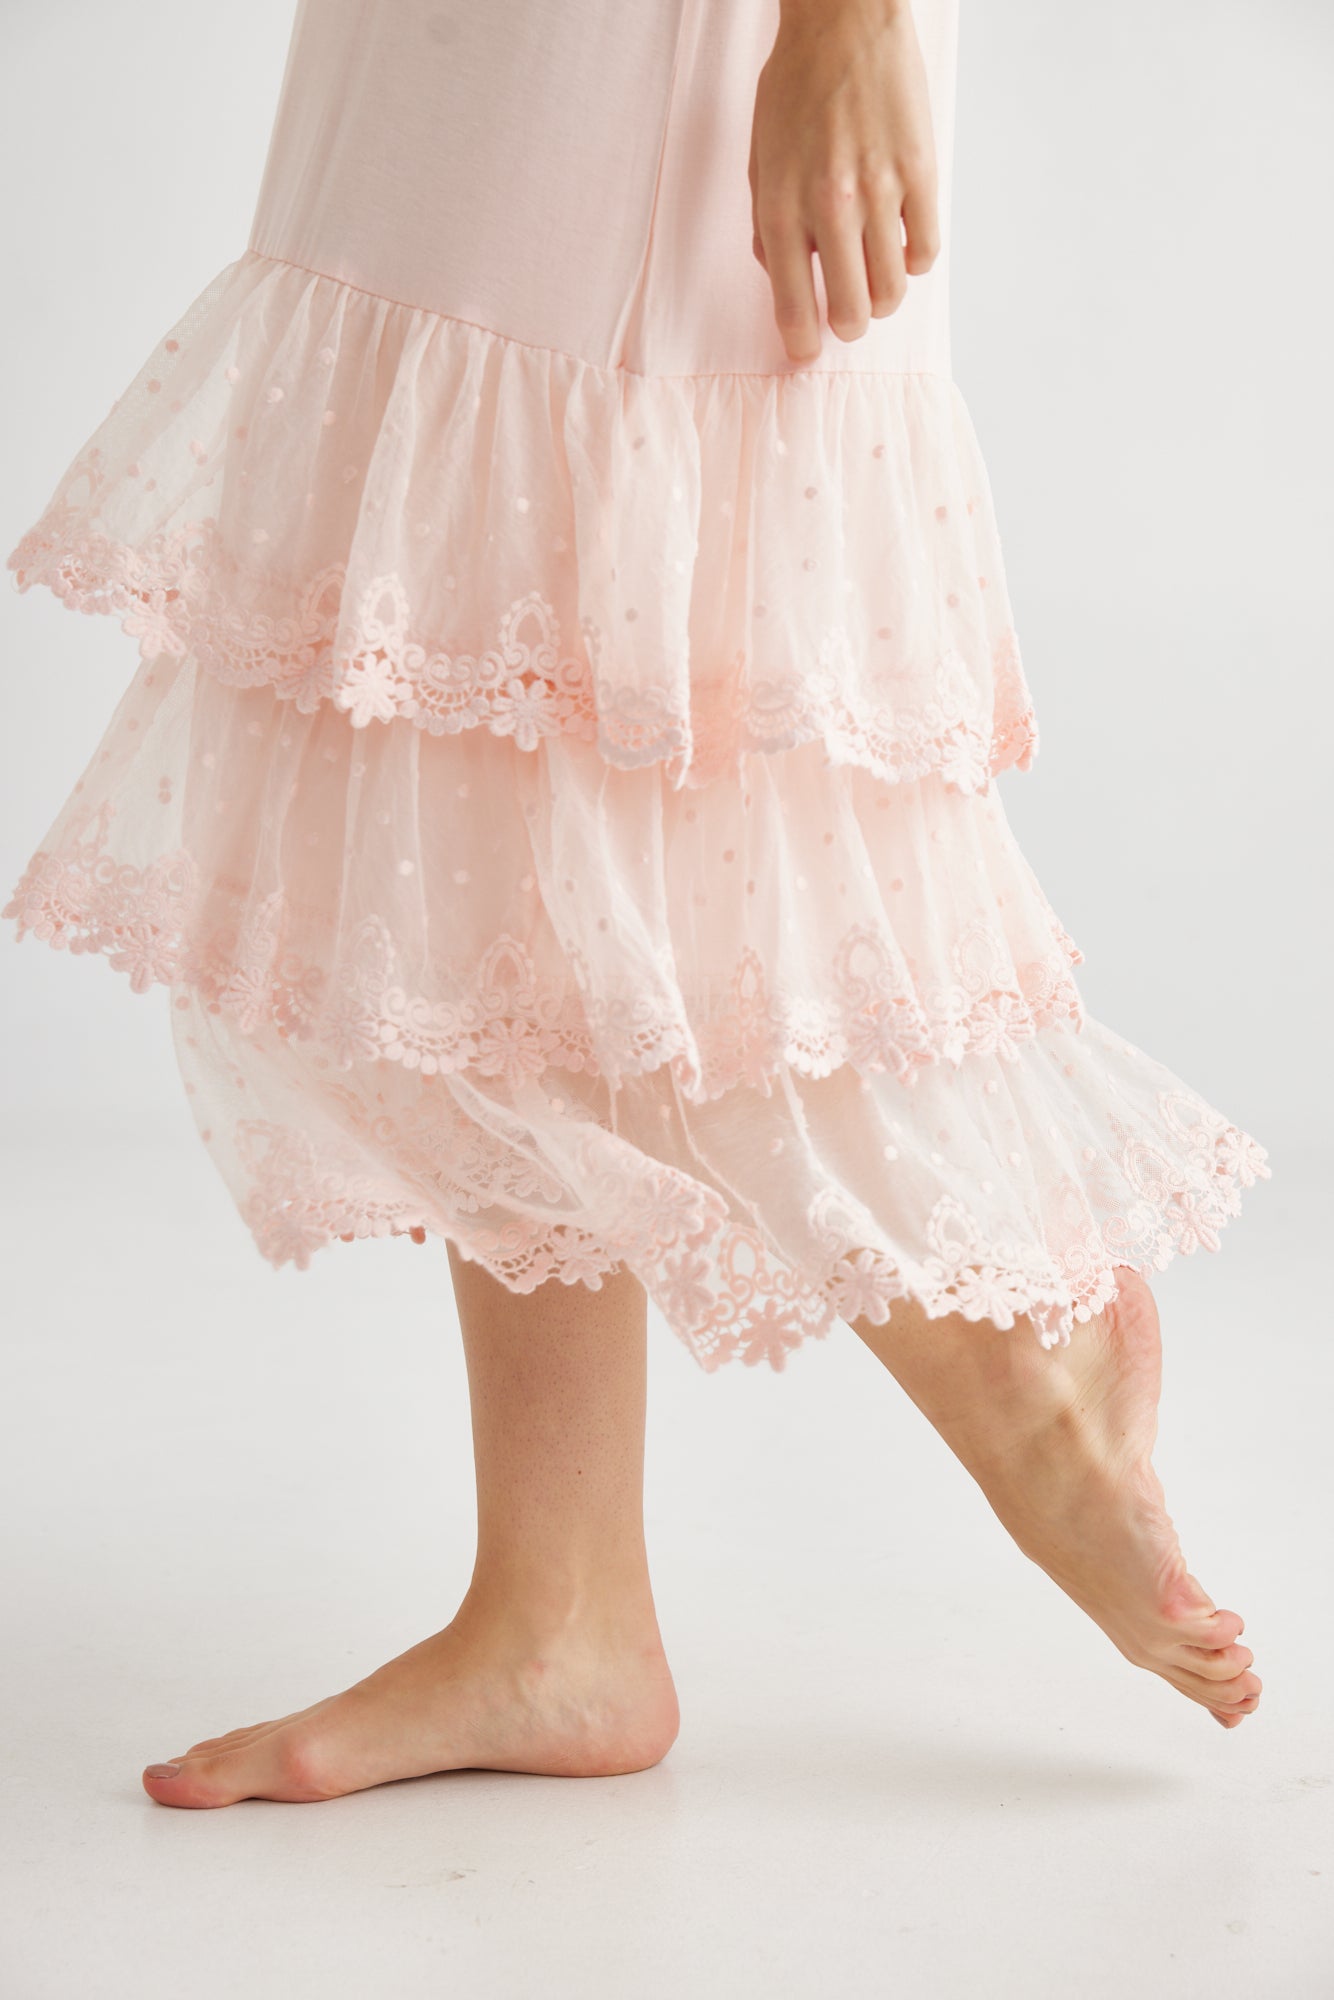 Evangeline Slip Dress. Pink